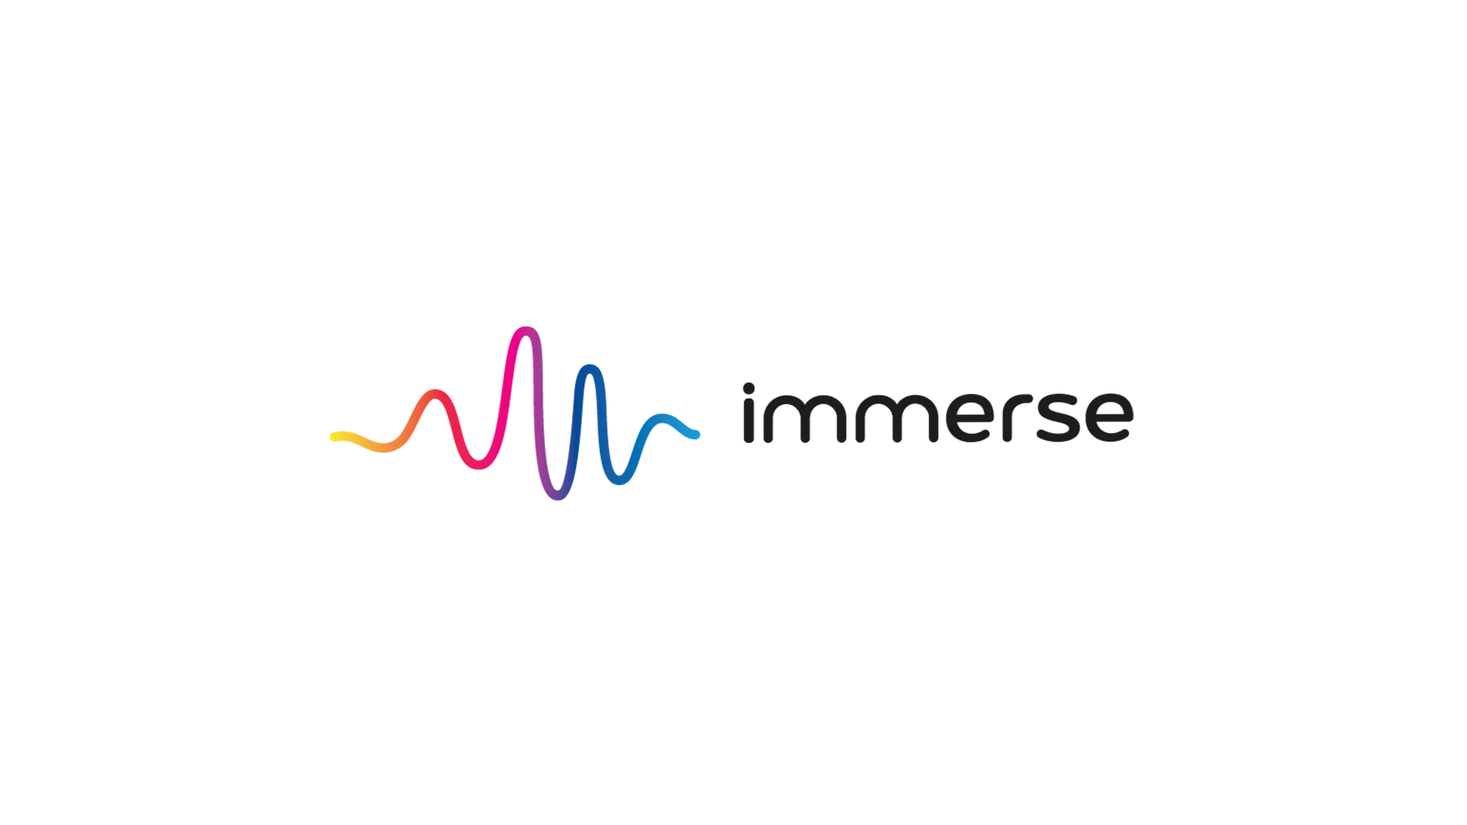 VR英語教育のImmerse、第三者割当増資によるシリーズAラウンドの資金調達を実施